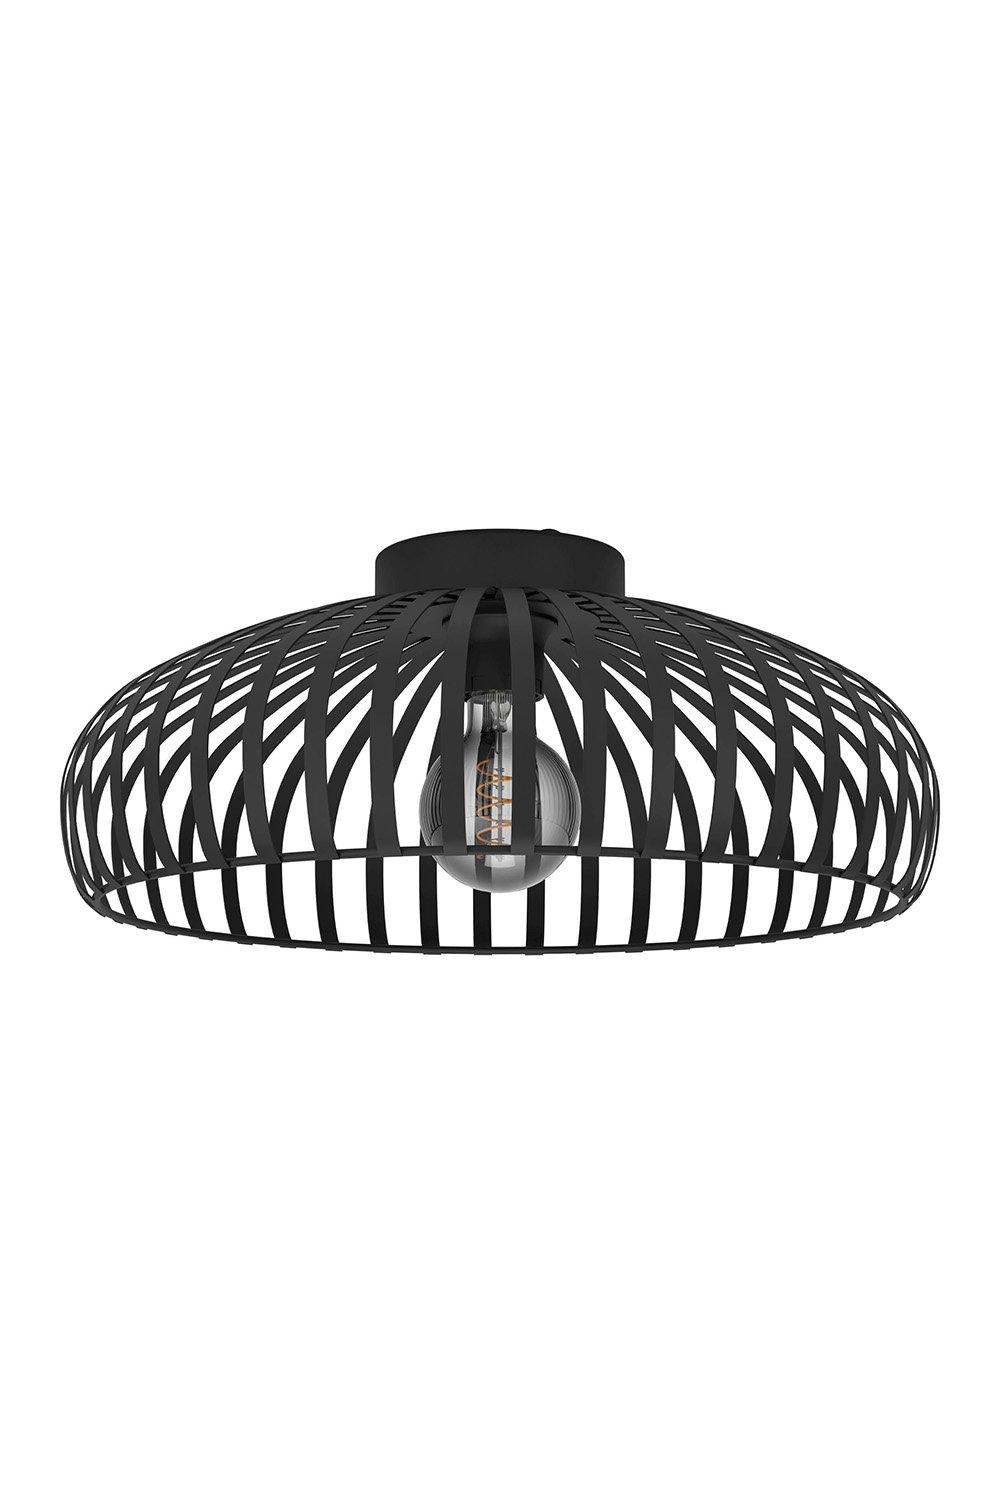 Mogano 3 Wireframe Black Flush Ceiling Light [?]: 43 cm